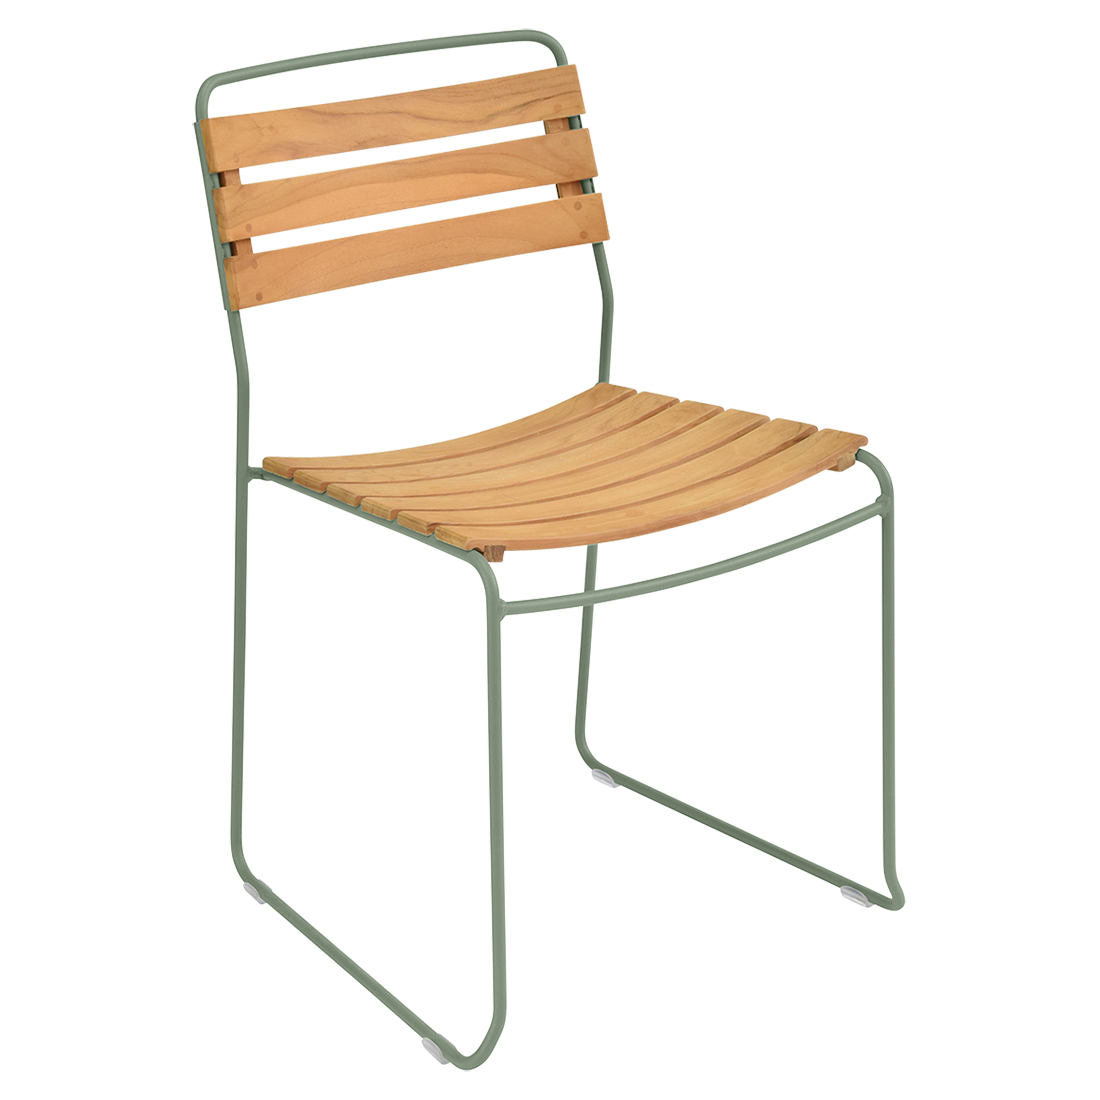 chaise surprising, chaise fermob, chaise bois et metal, chaise de jardin, chaise design, chaise bois et vert, guggenbichler